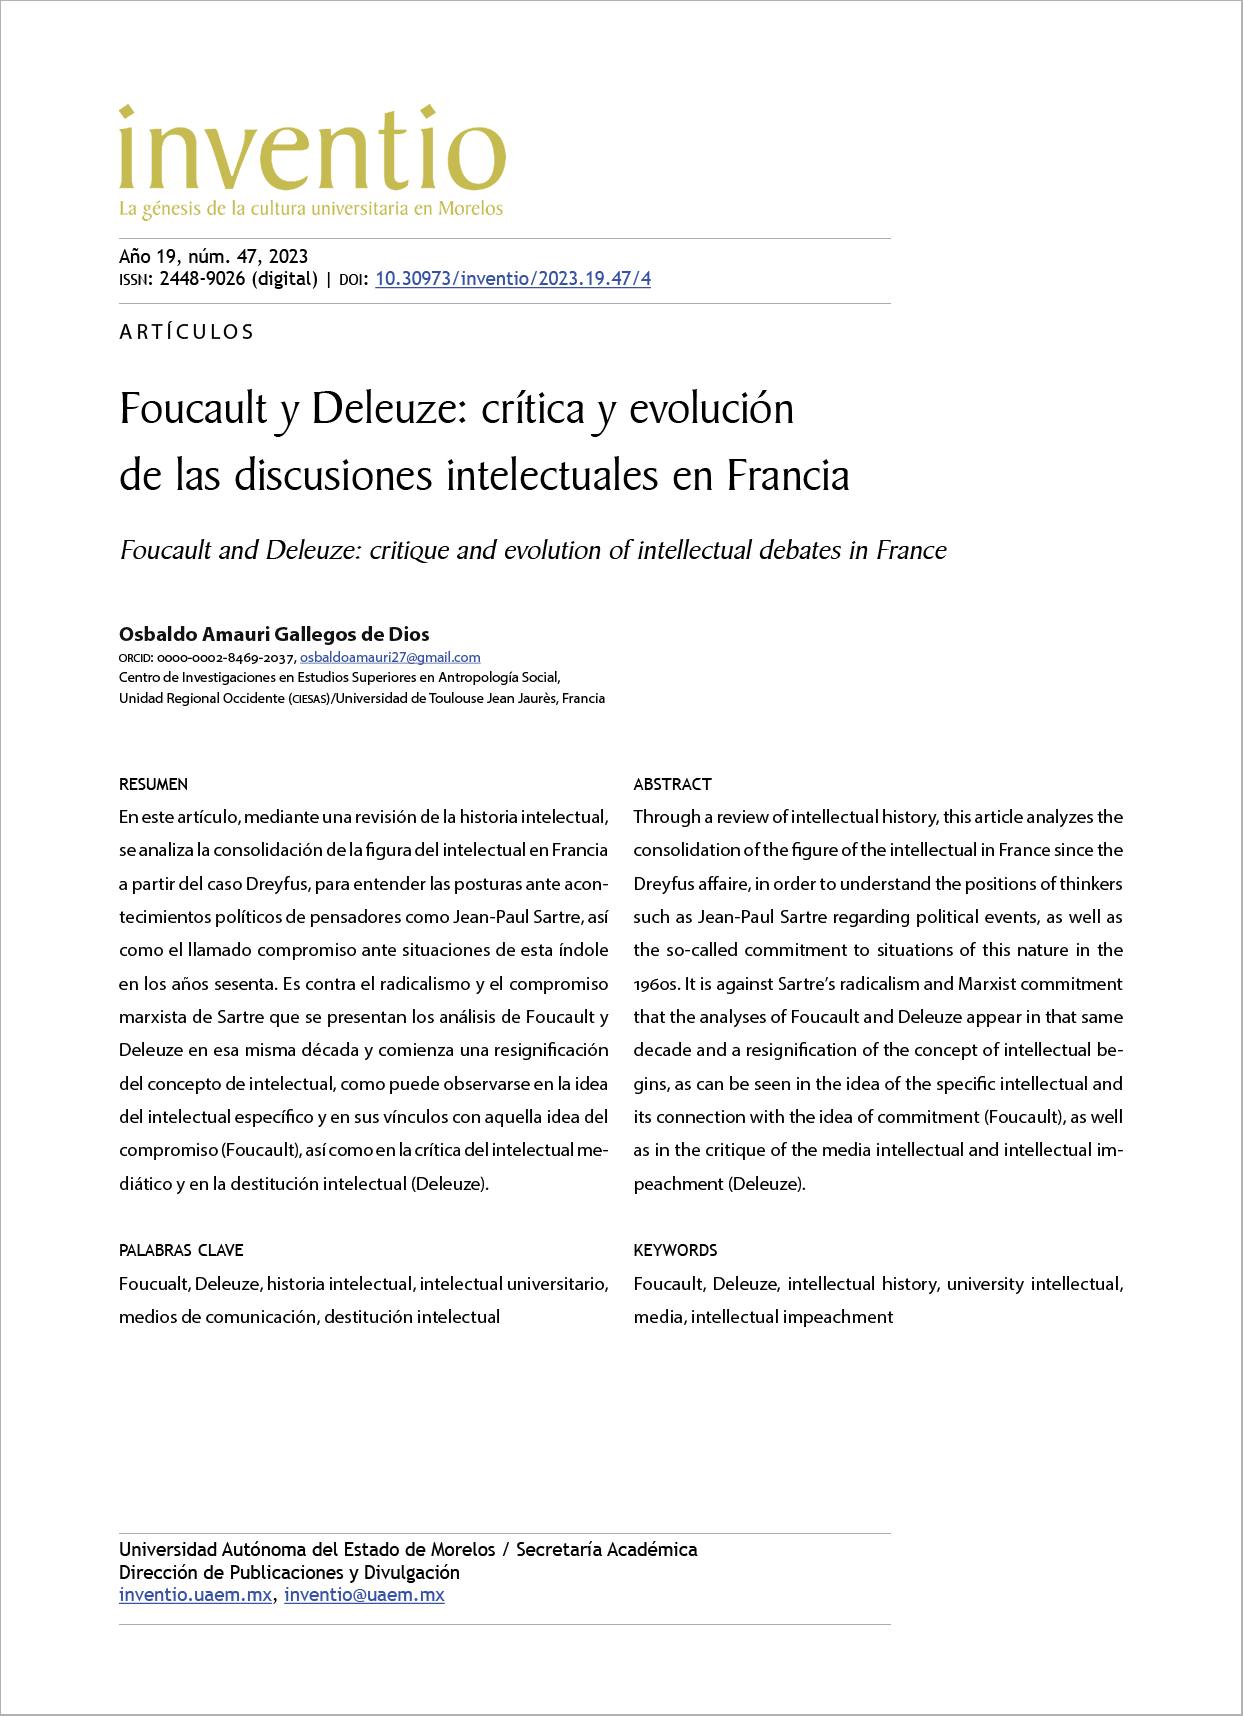 Foucault y Deleuze: crítica y evolución de las discusiones intelectuales en Francia